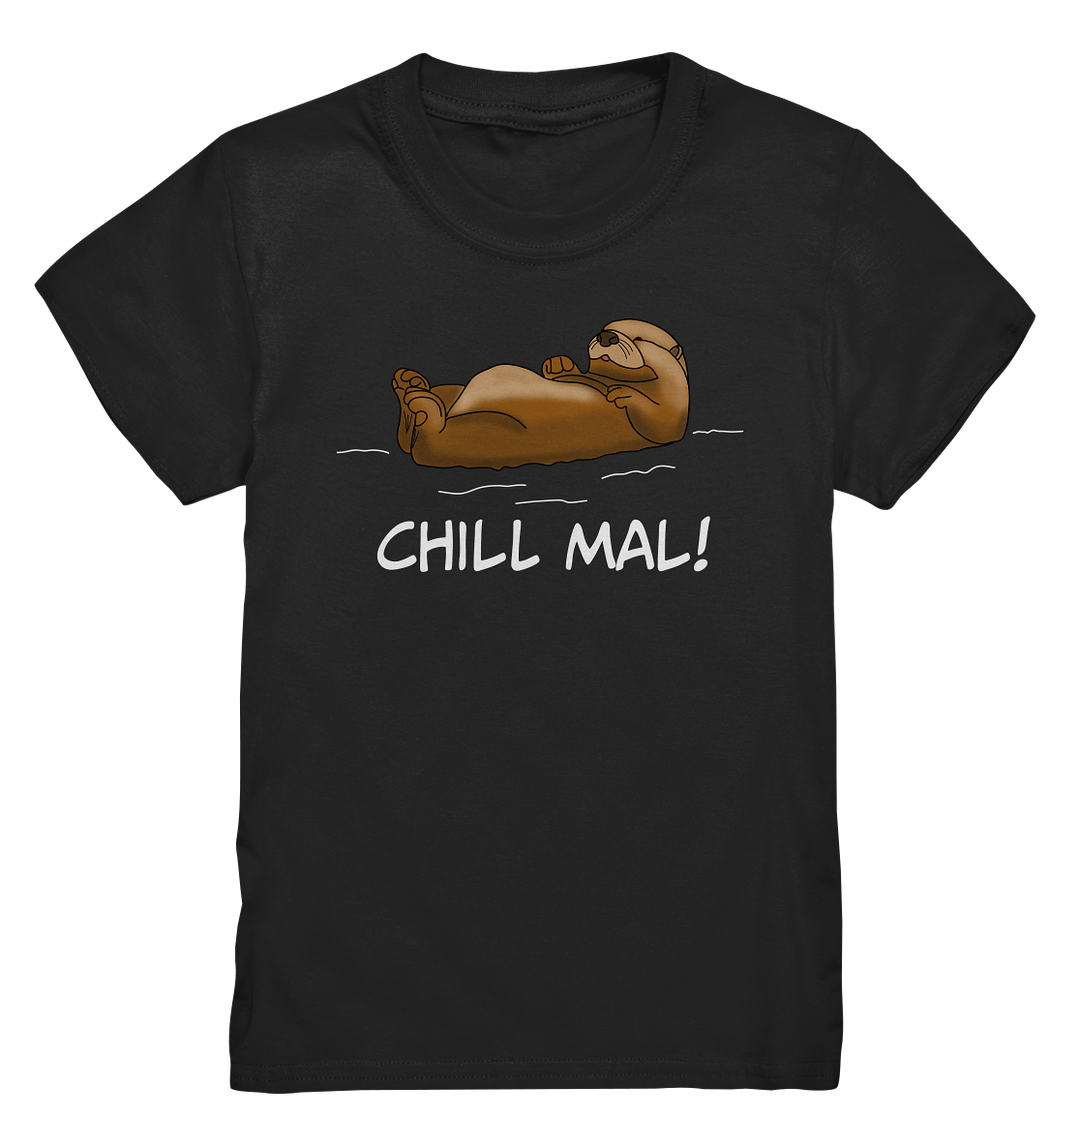 ChILL MAL OTTER - Kids Premium Shirt